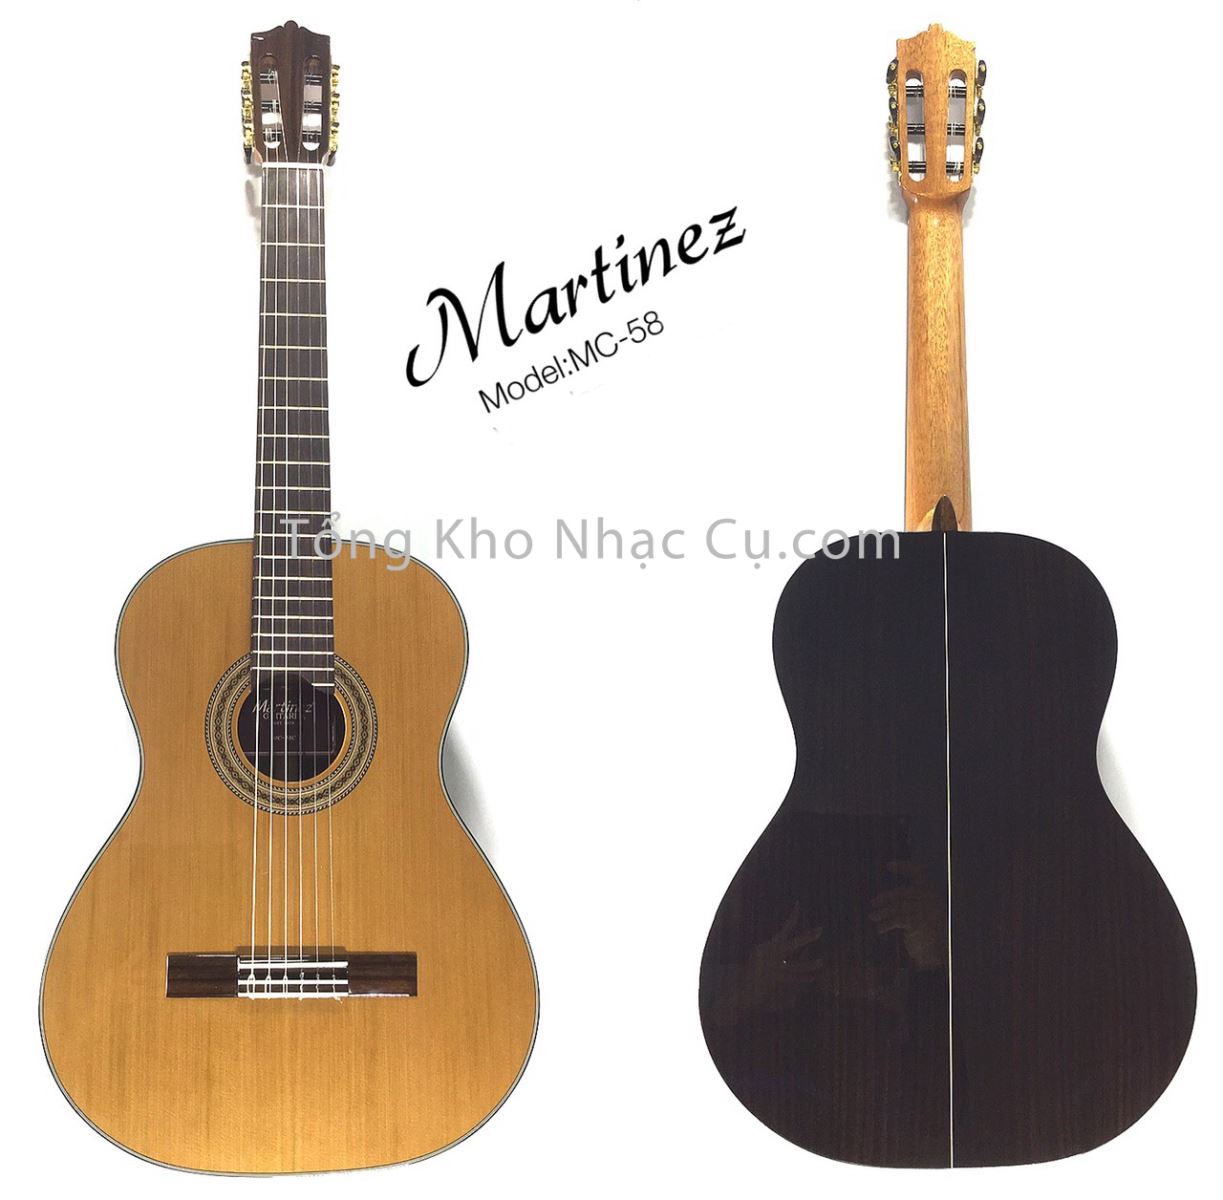 Mua bán Đàn Guitar Classic Martinez MC-58C cao cấp, chính hãng